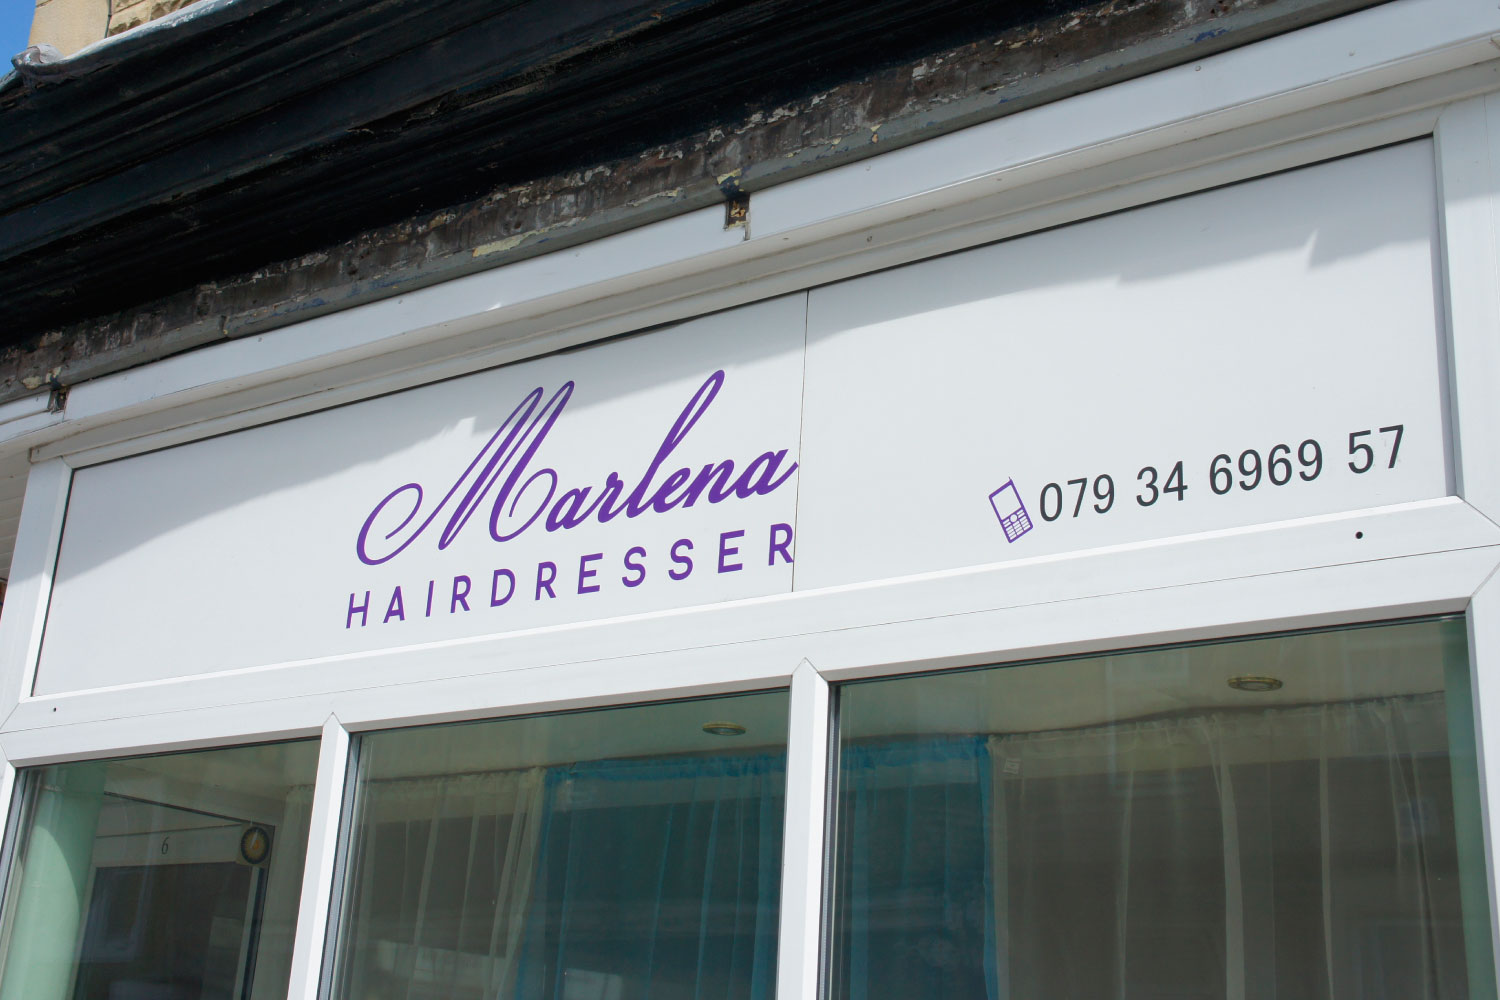 Projekt logotyp Marlena i szyld salonu fryzjerskiego